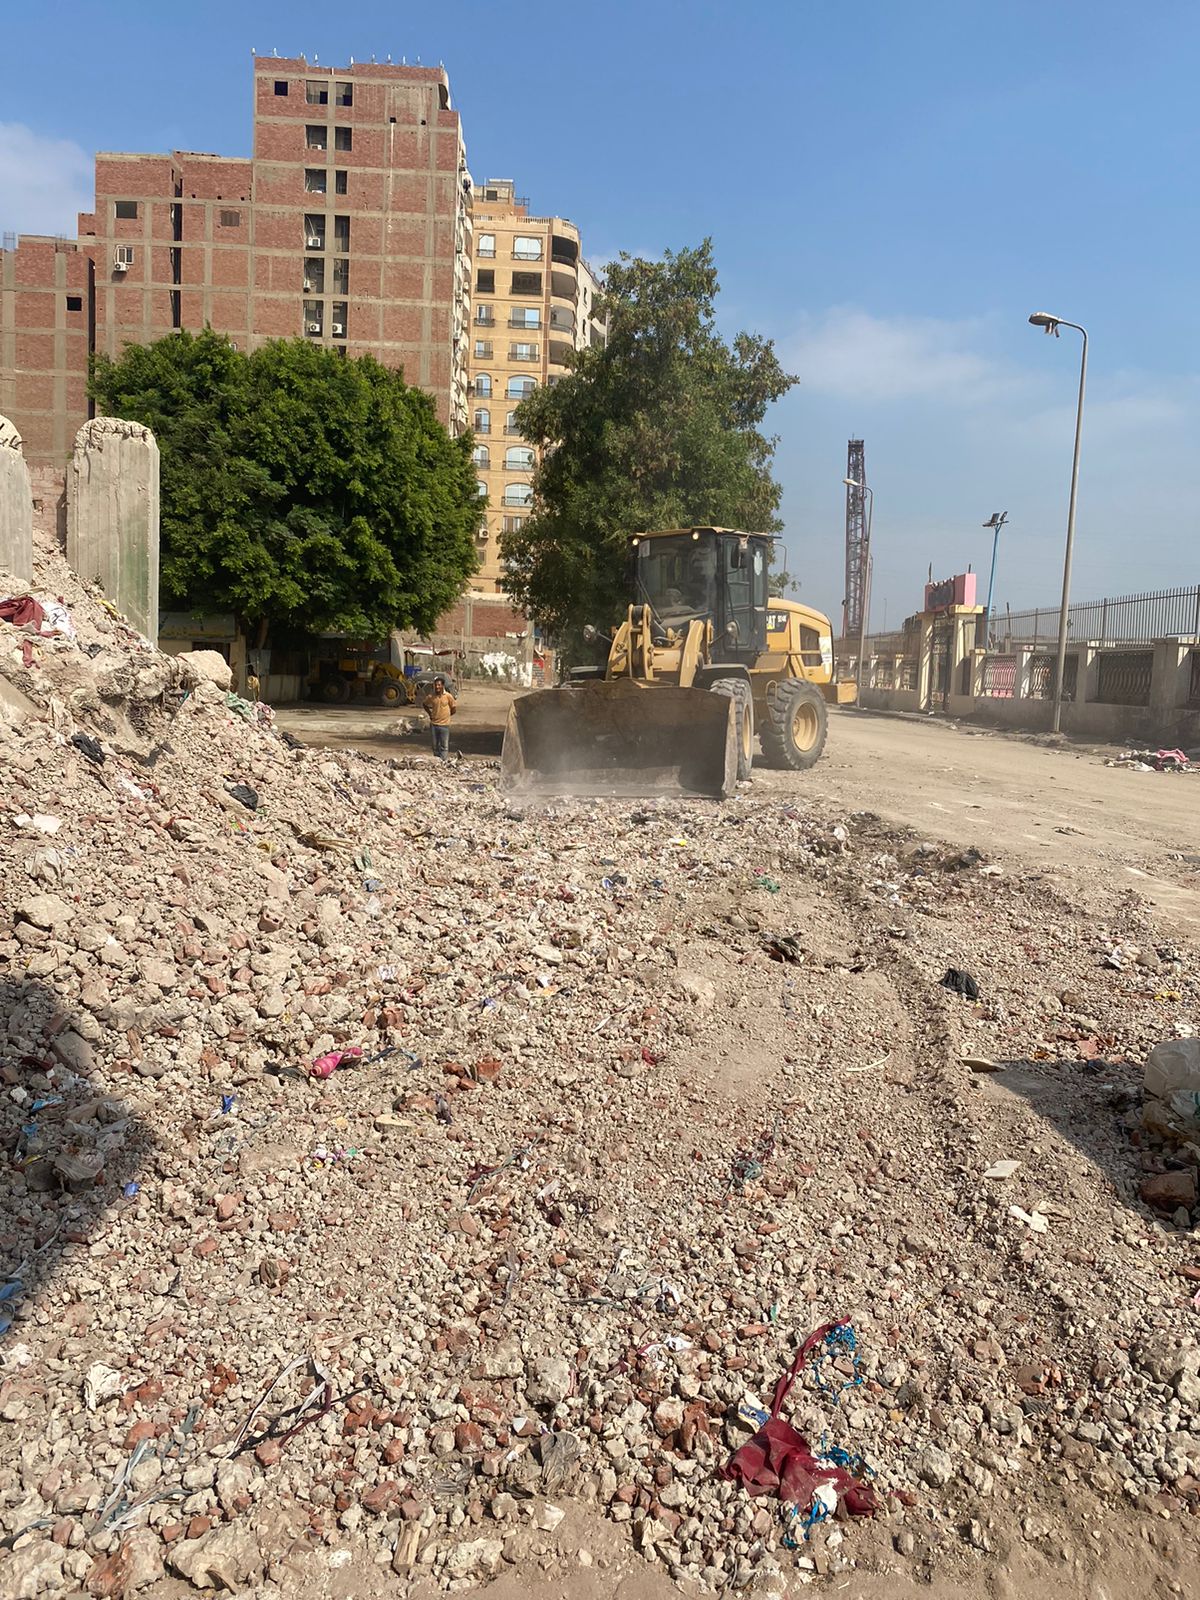  رفع مخلفات من شارع مسجد السلام بوراق الحضر استجابة للمواطنين (3)